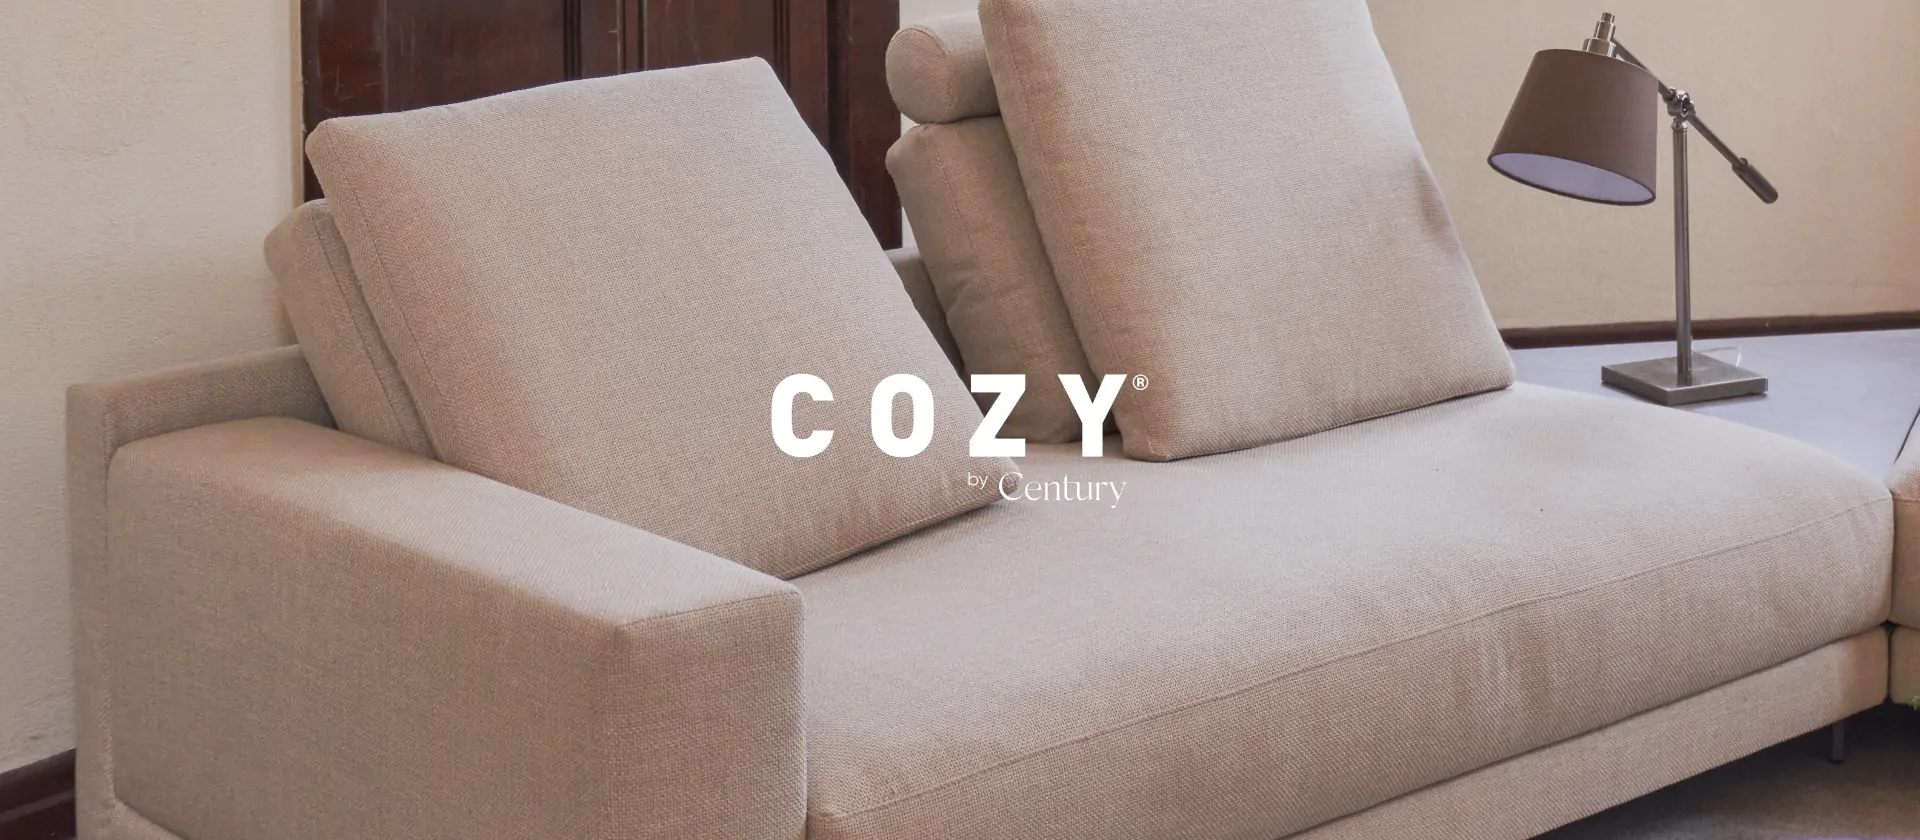 Tecnologia de conforto: o aconchego dos sofás Cozy by Century